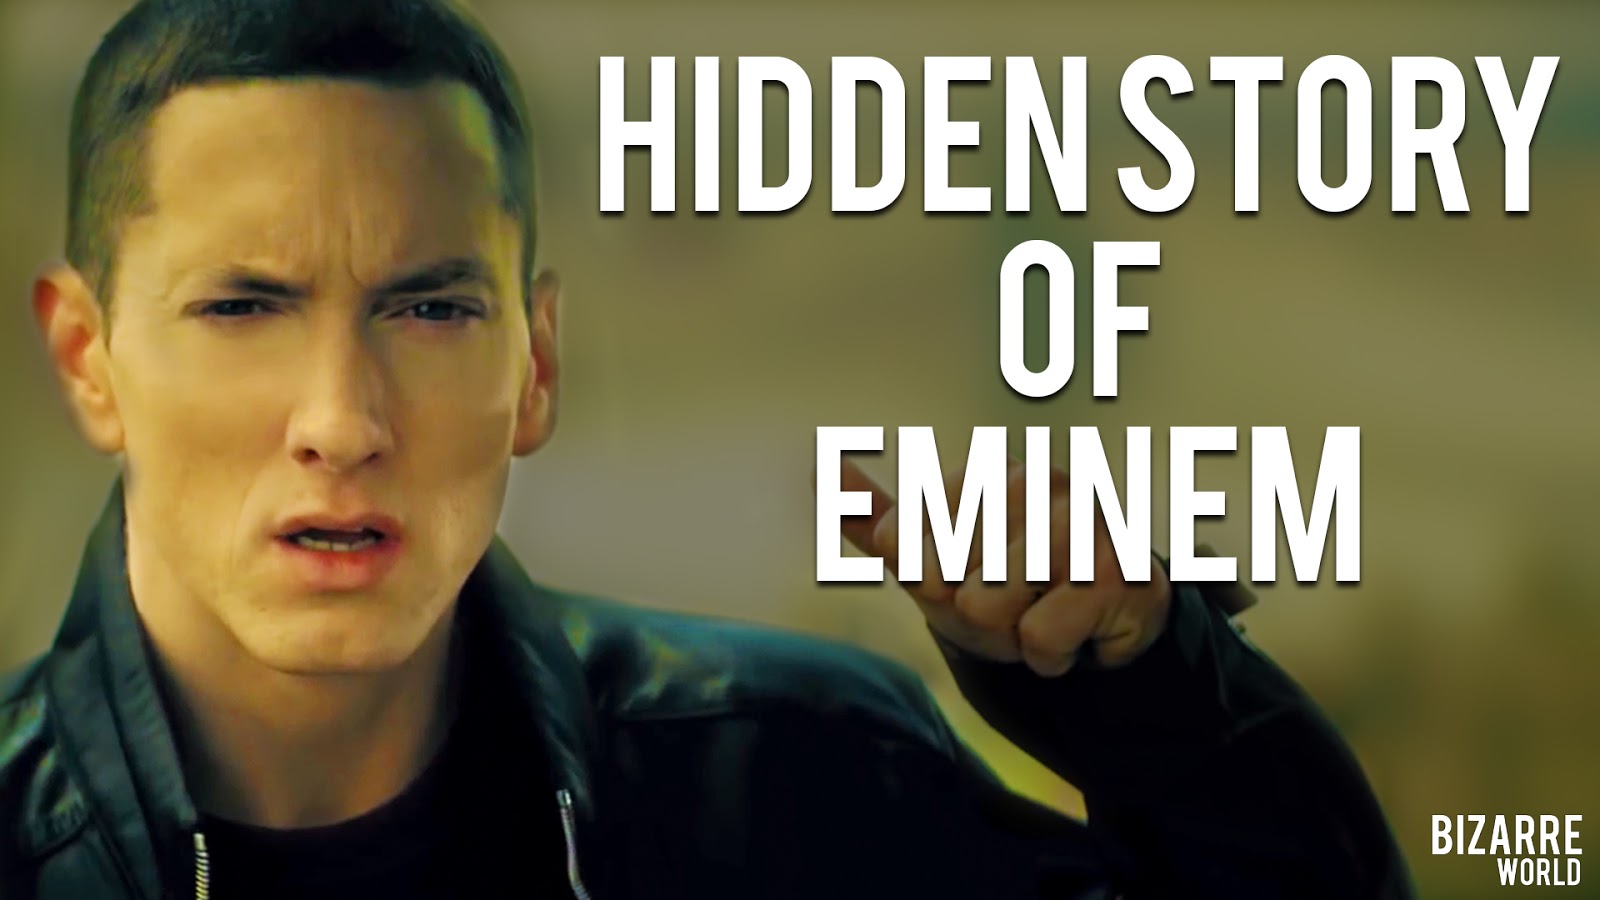 Эминем песни мама. Биззар Эминем. Eminem 2001. Eminem обложка. Эминем история псевдонима.